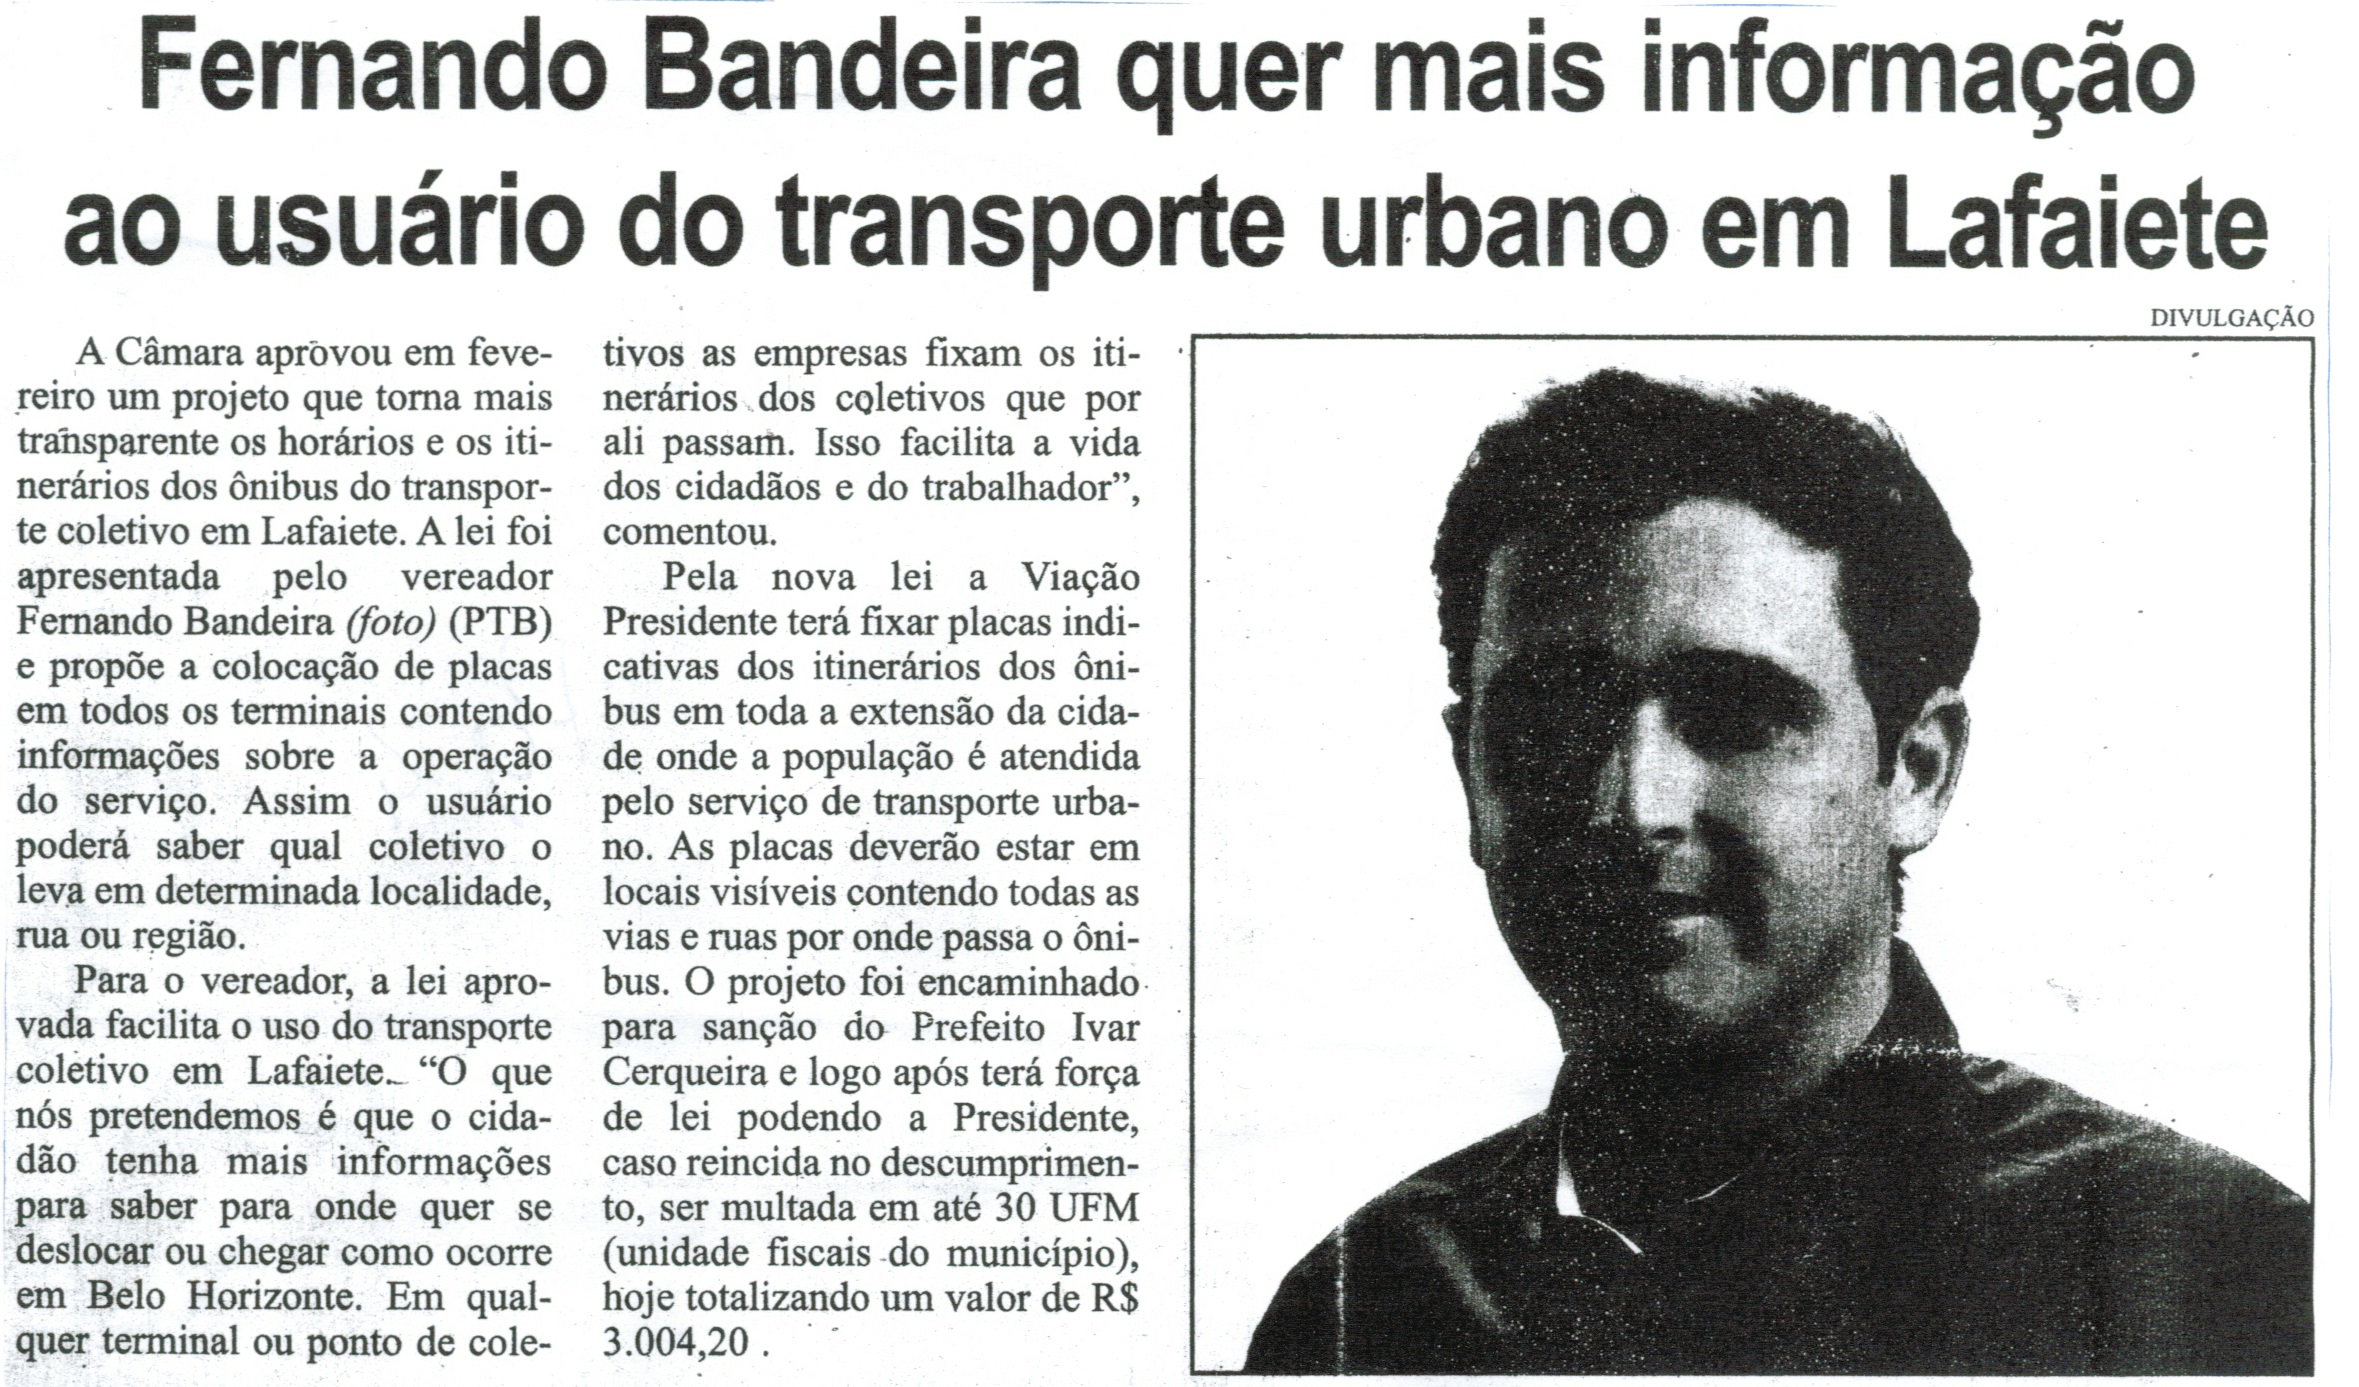 Fernando Bandeira quer mais informação ao usuário do transporte urbano em Lafaiete. Correio de Minas, Conselheiro Lafaiete, 21 mar. 2015, p. 04.